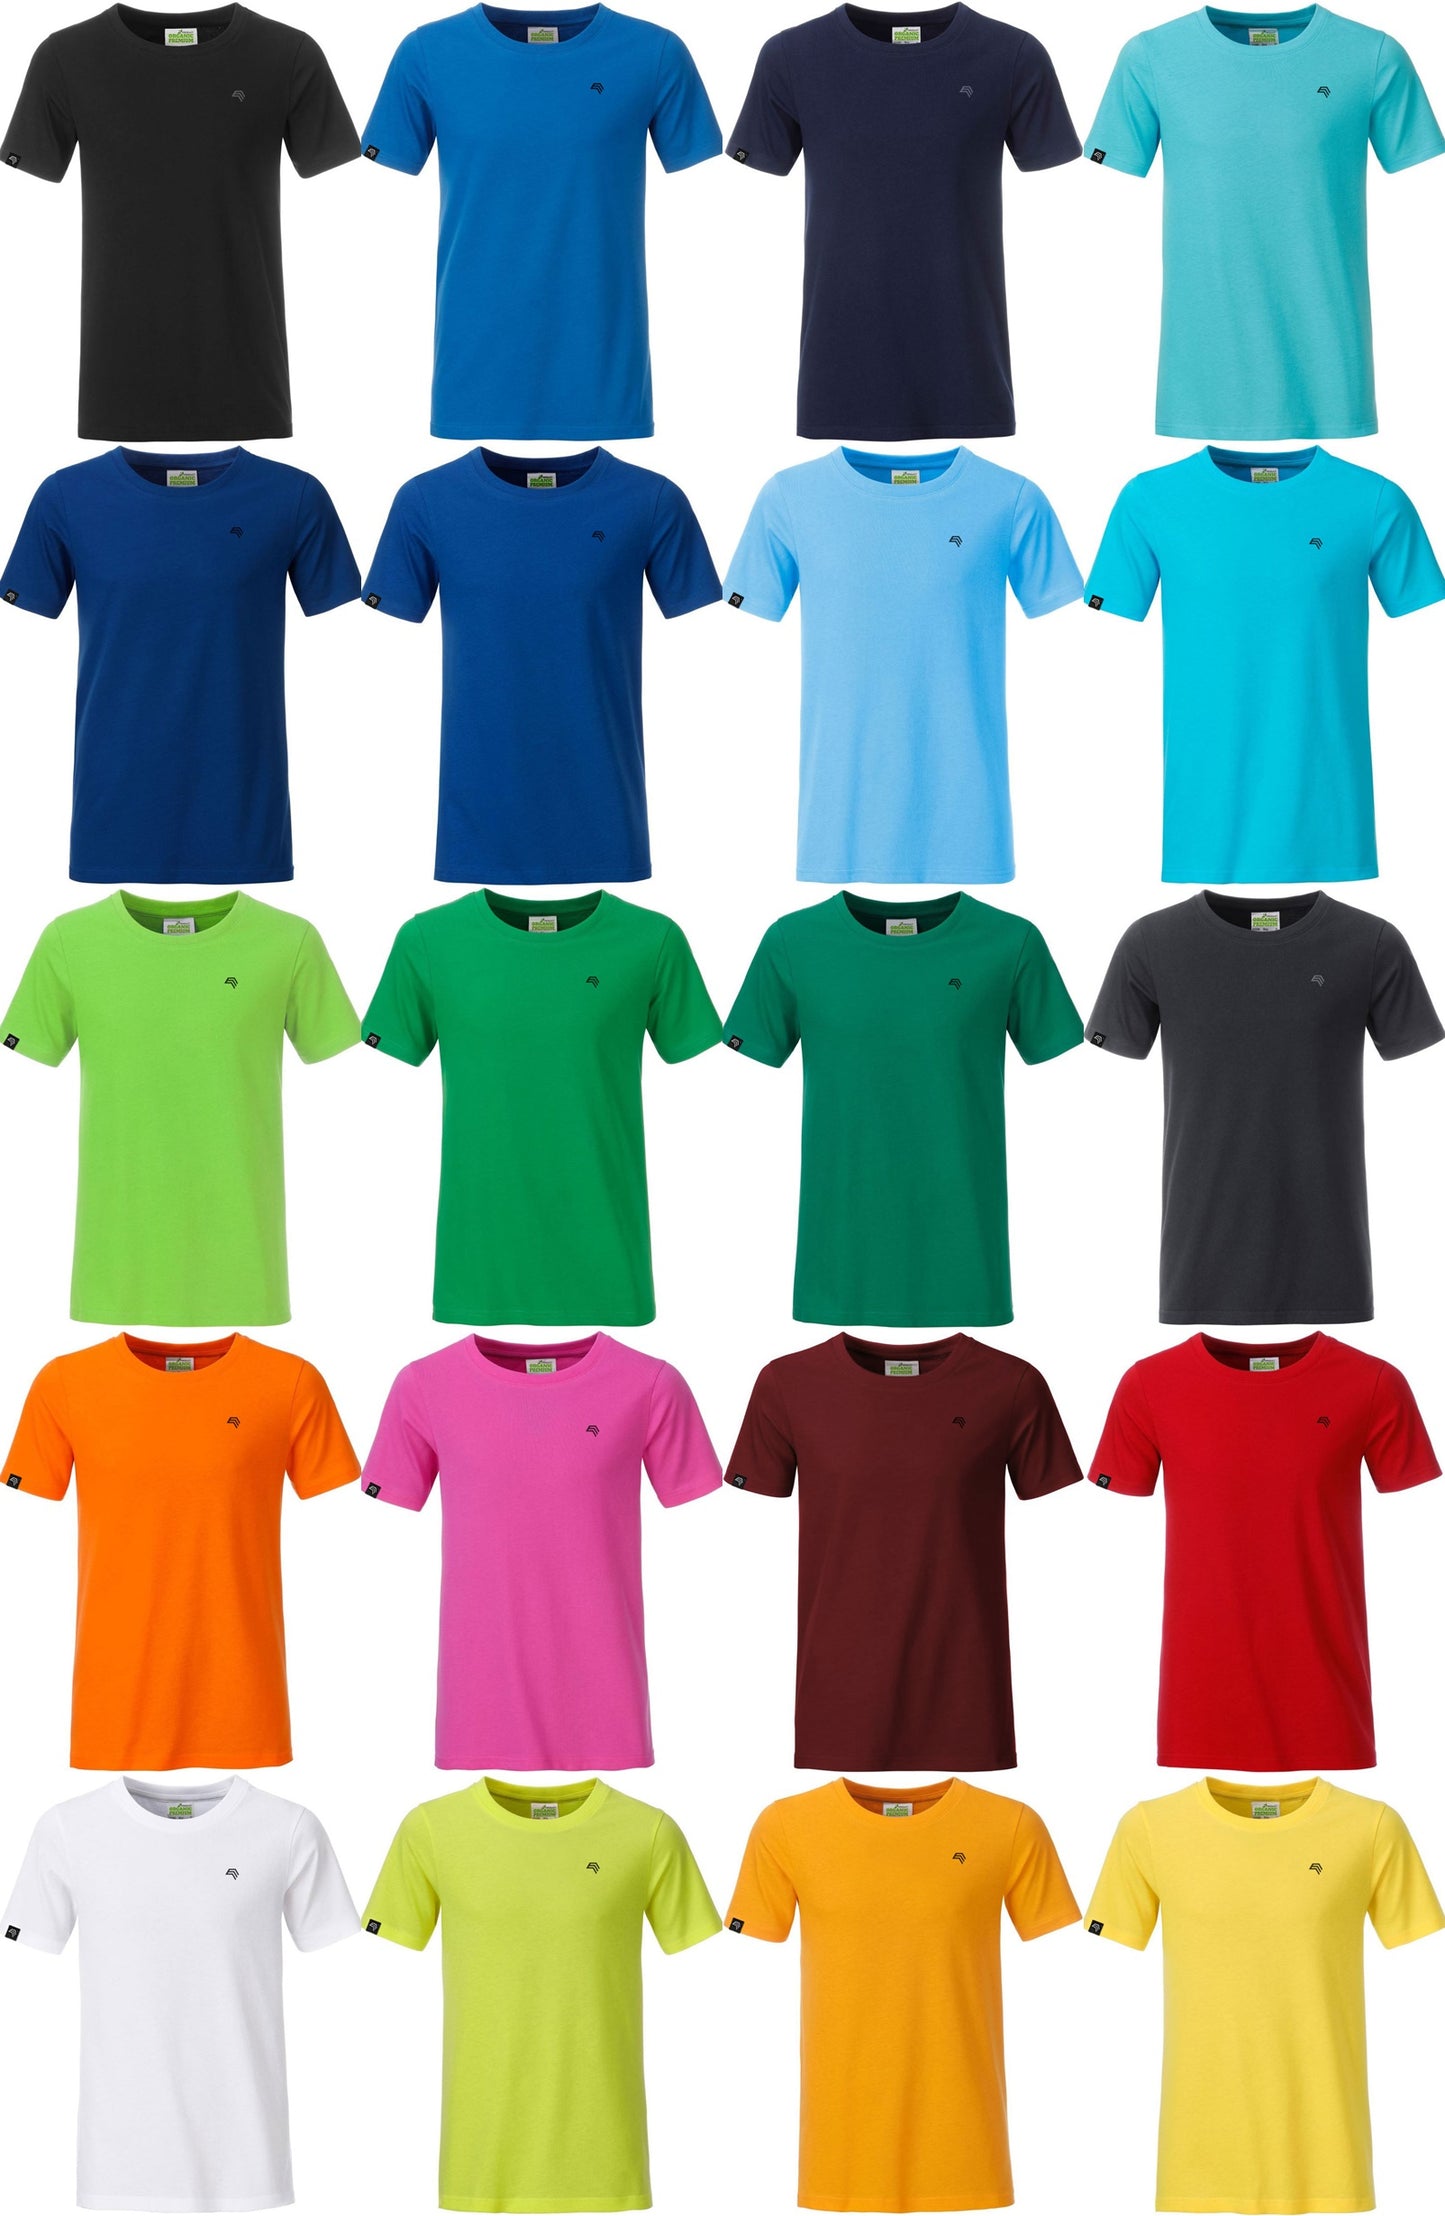 JAN 8008B ― Kinder/Jungen Bio-Baumwolle T-Shirt - Grün Acid Gelb